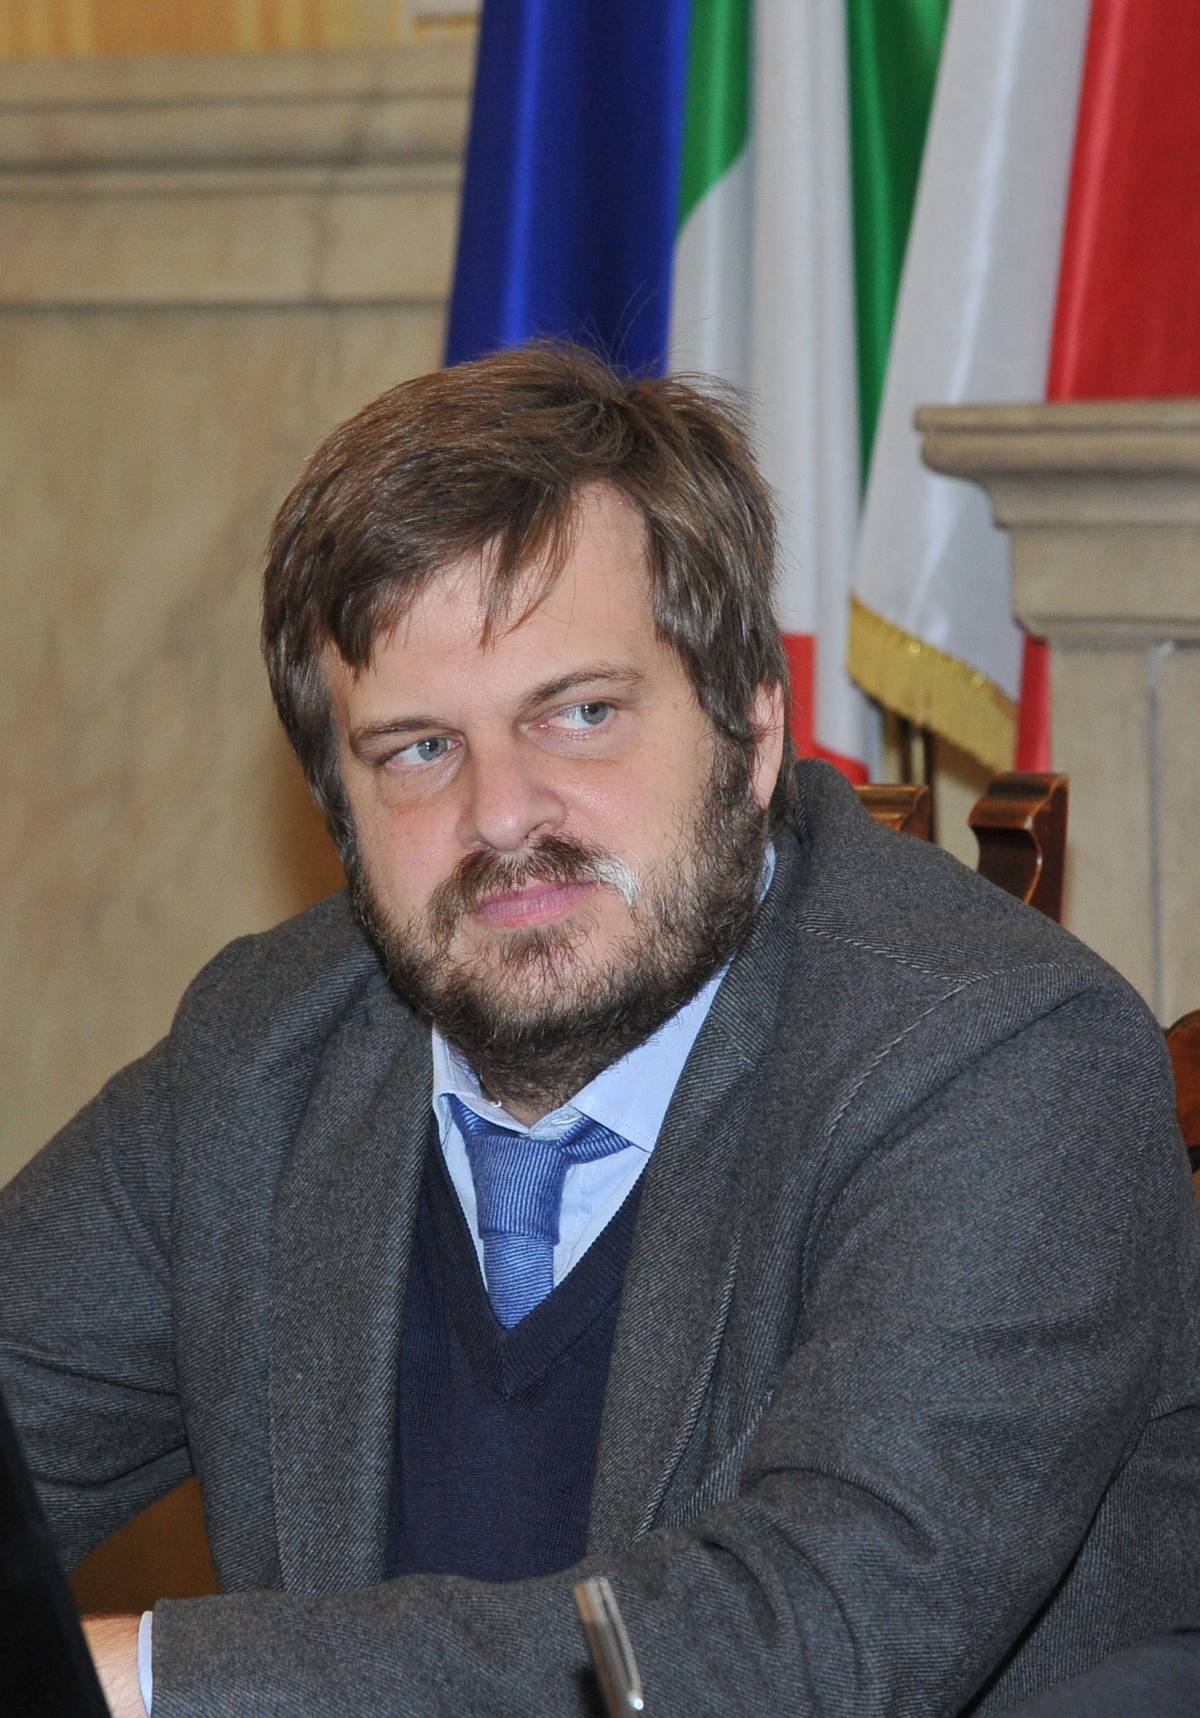 Profughi, Majorino sfida Salvini sul decreto Sicurezza